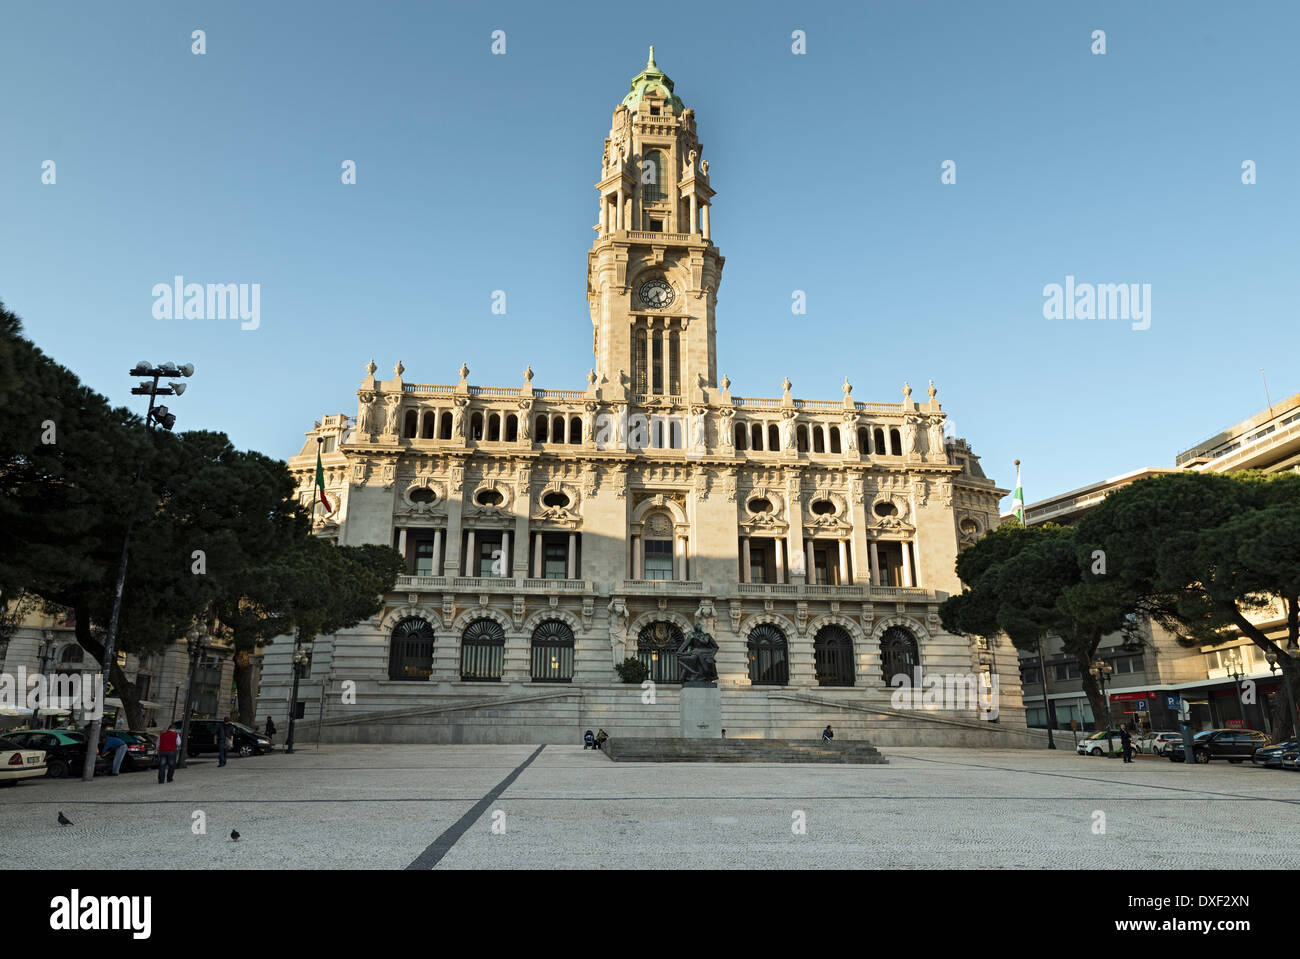 Camara Municipal de Porto - City Hall in Porto, Portugal Stock Photo - Alamy